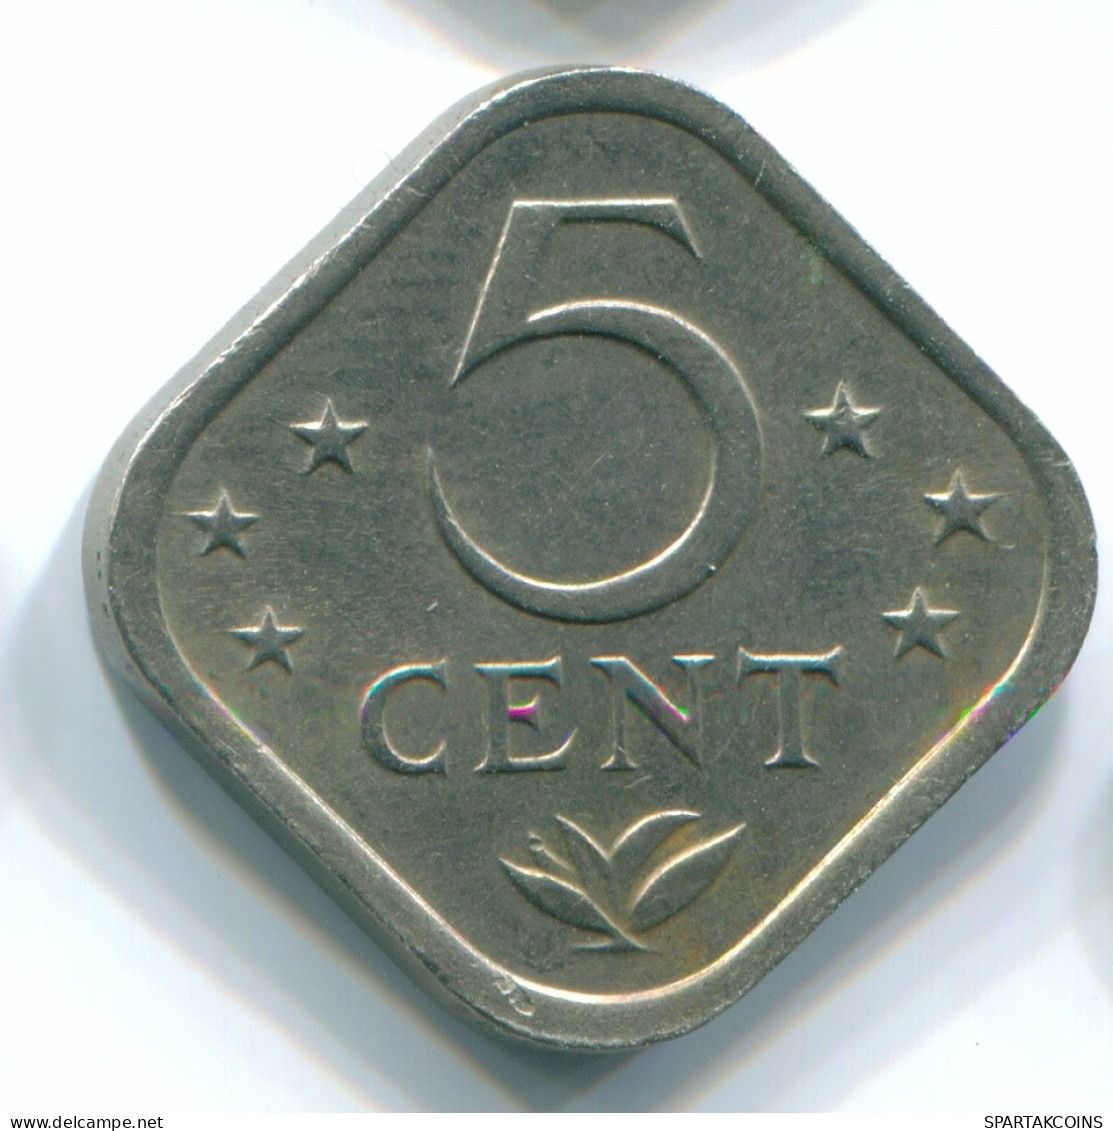 5 CENTS 1975 NETHERLANDS ANTILLES Nickel Colonial Coin #S12253.U.A - Niederländische Antillen